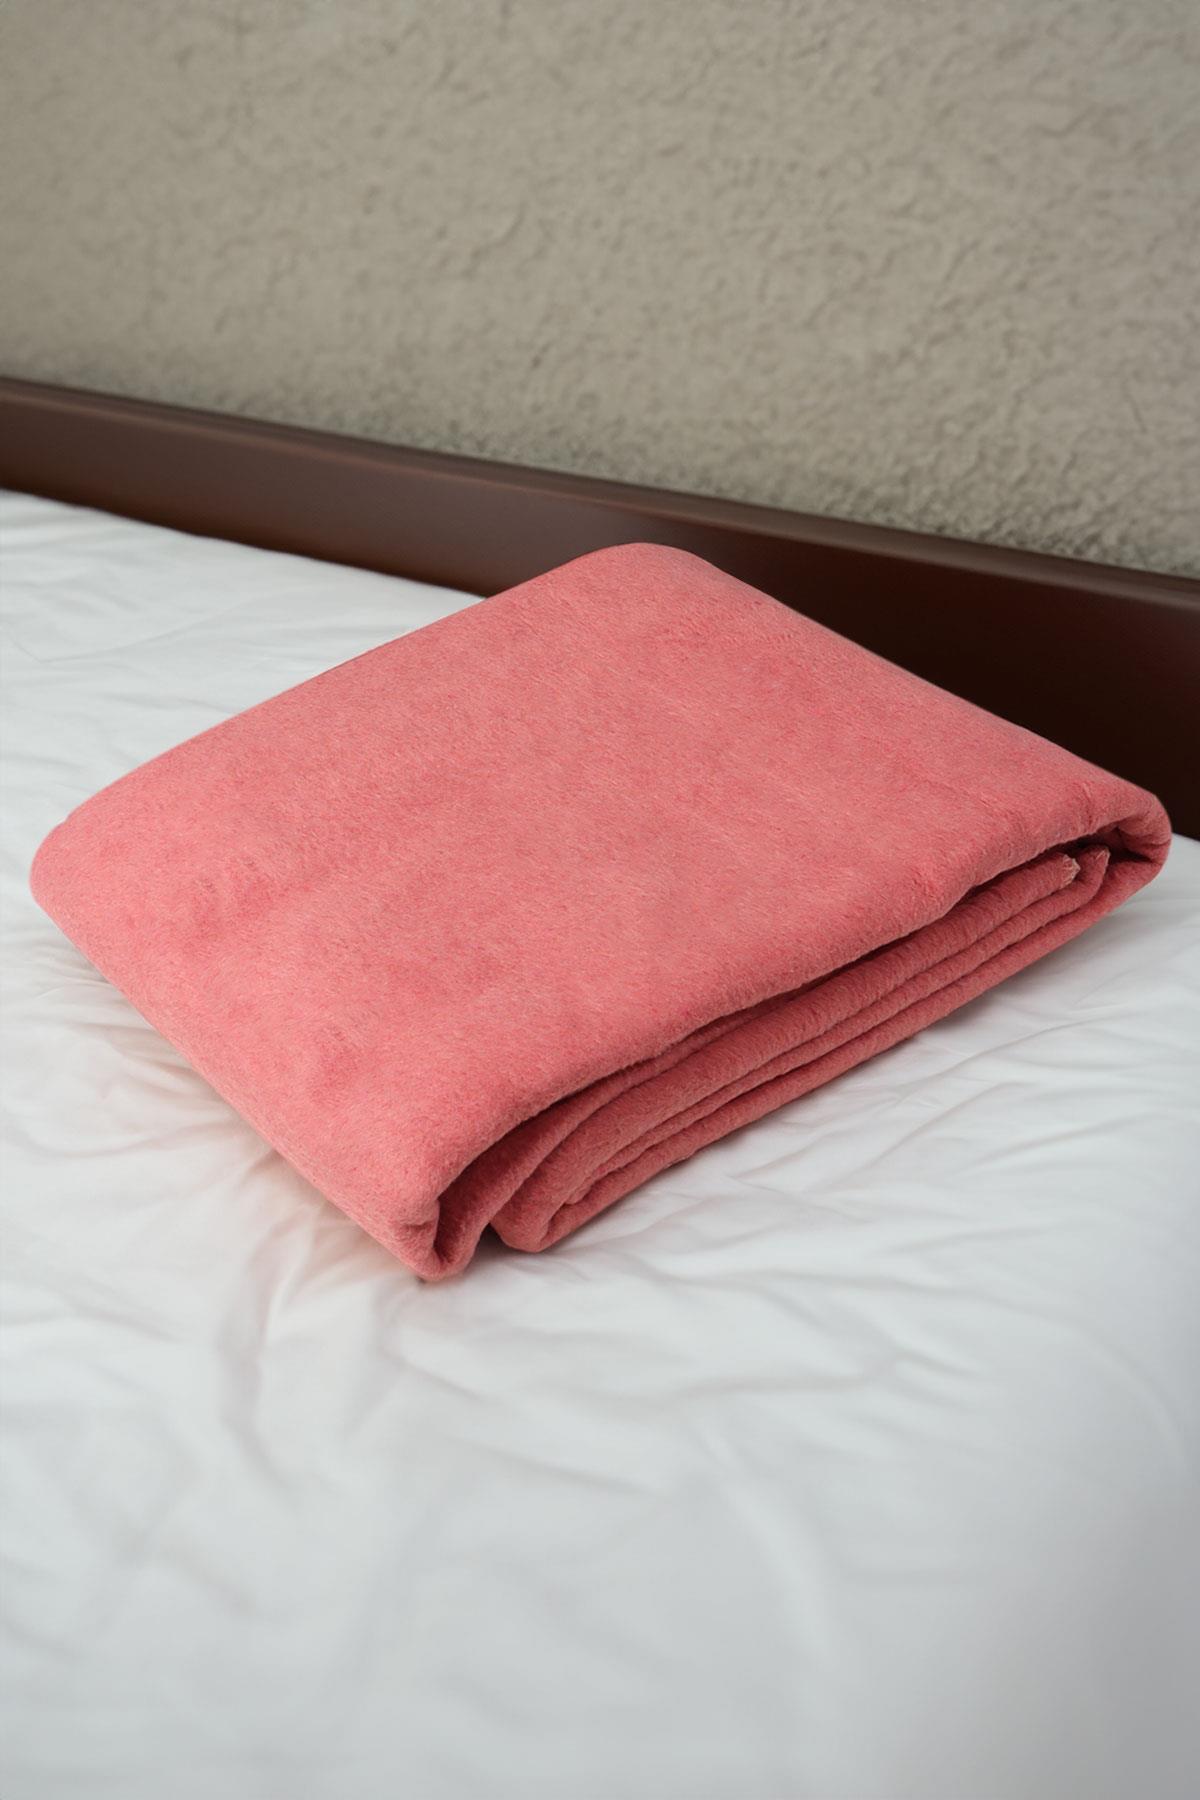 yesilhome tek kisilik pamuk battaniye cift tarafli battaniye pembe krem 120032.jpg